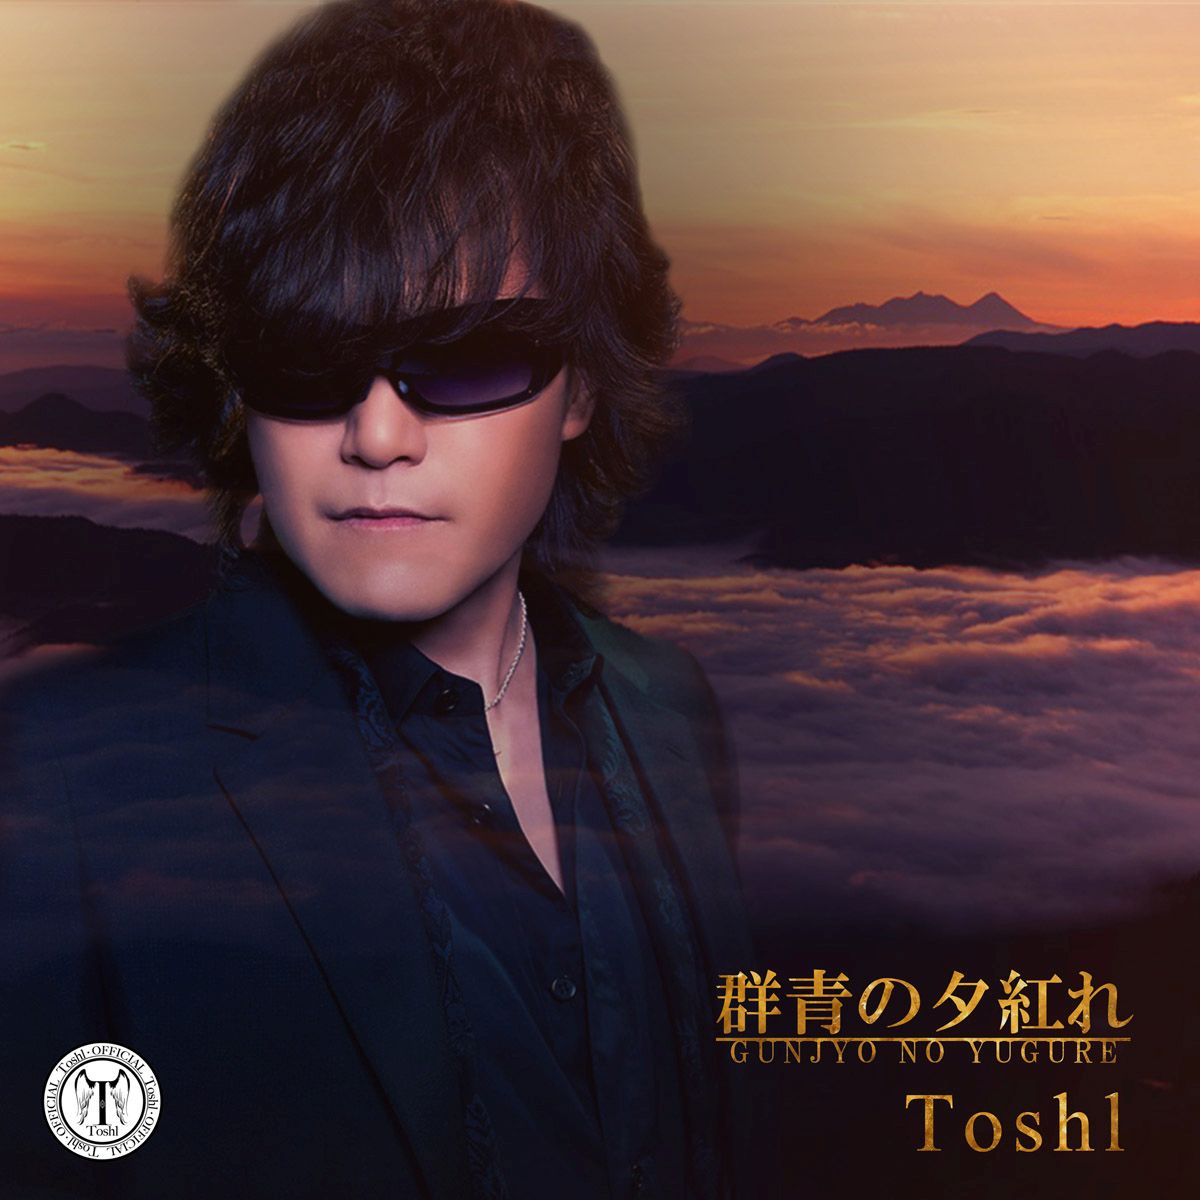 楽天ブックス: 群青の夕紅れ - ToshI - 4529123001535 : CD